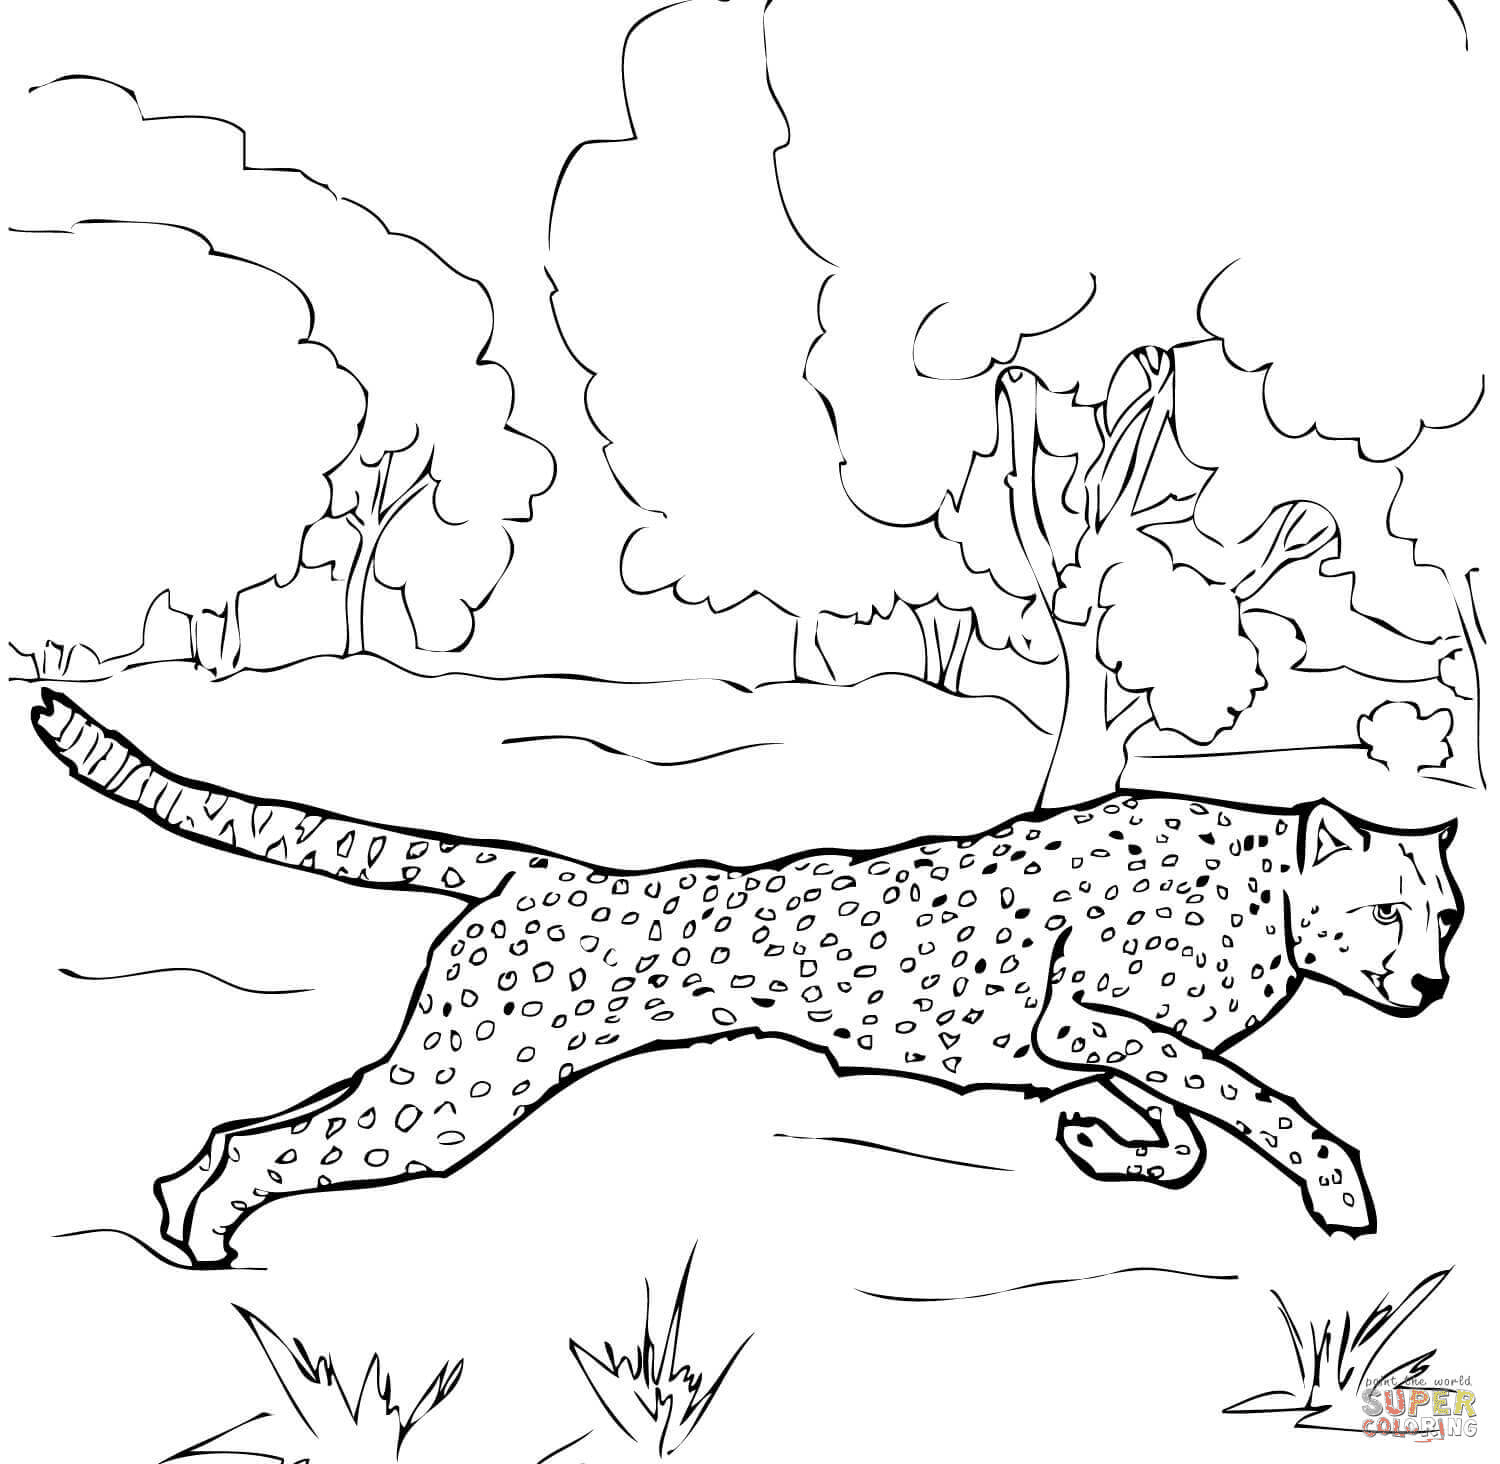 Running Cheetah Coloring Page